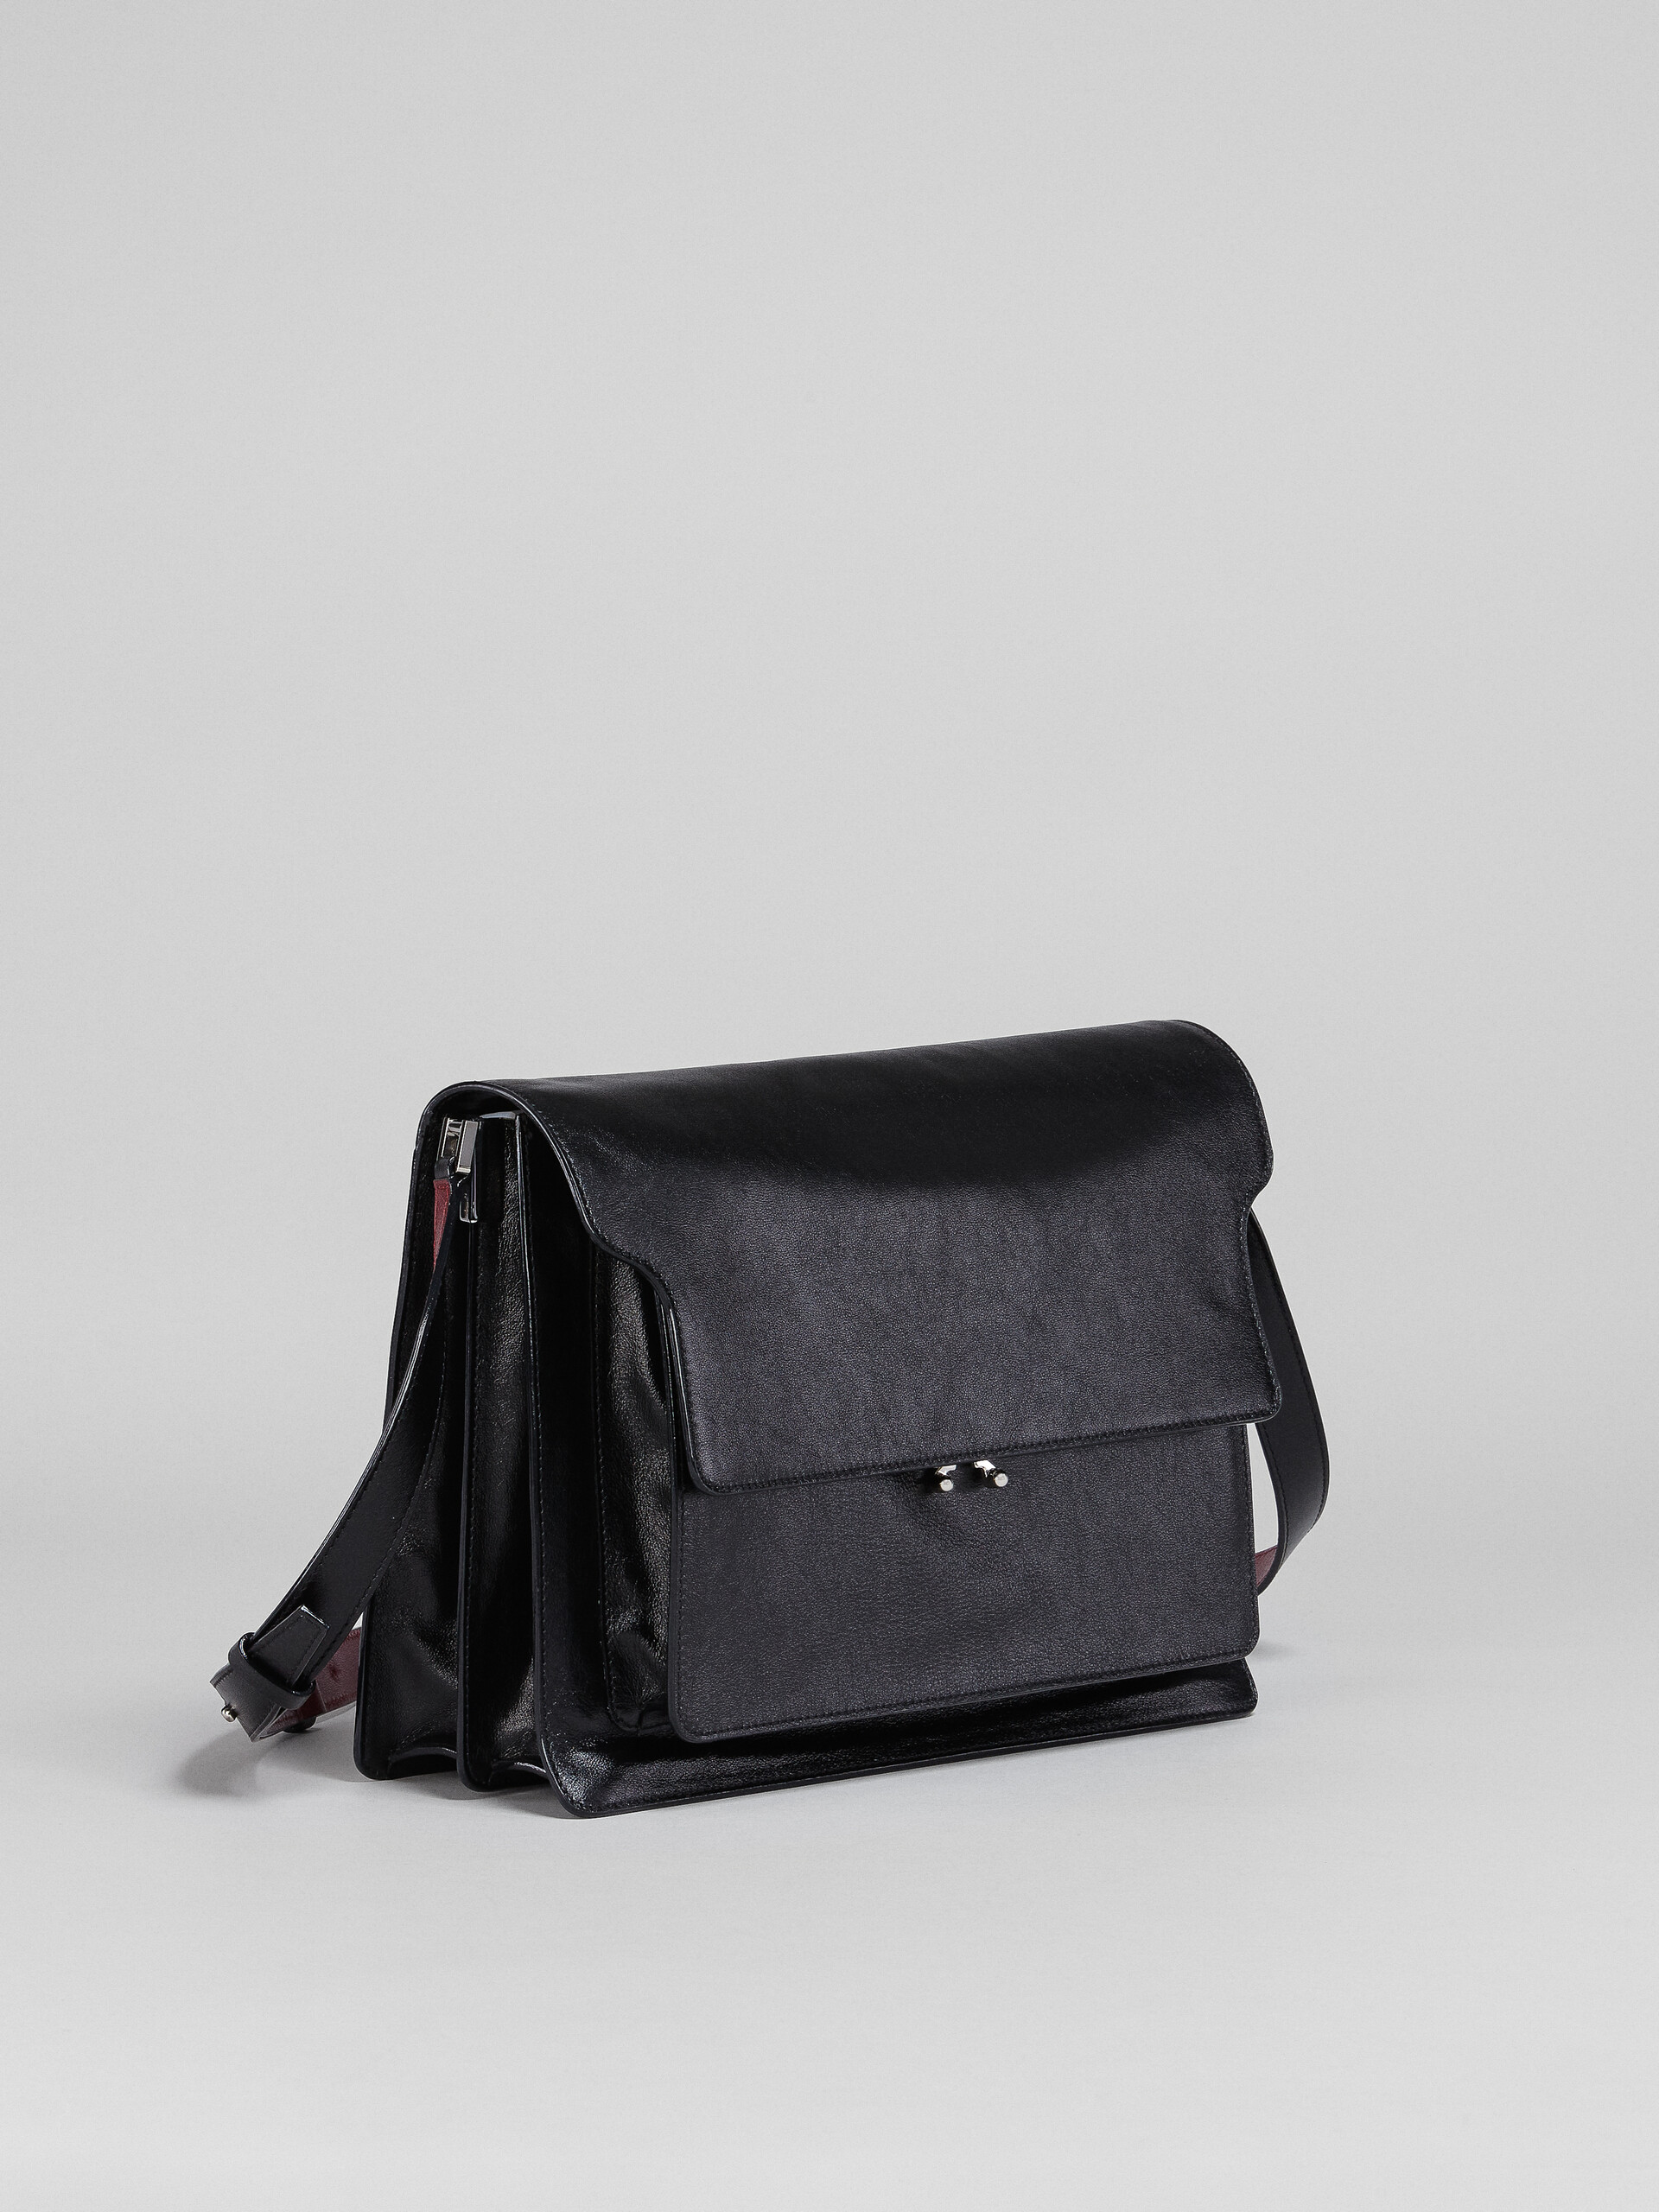 Calf leather TRUNK SOFT bag - Shoulder Bag - Image 6